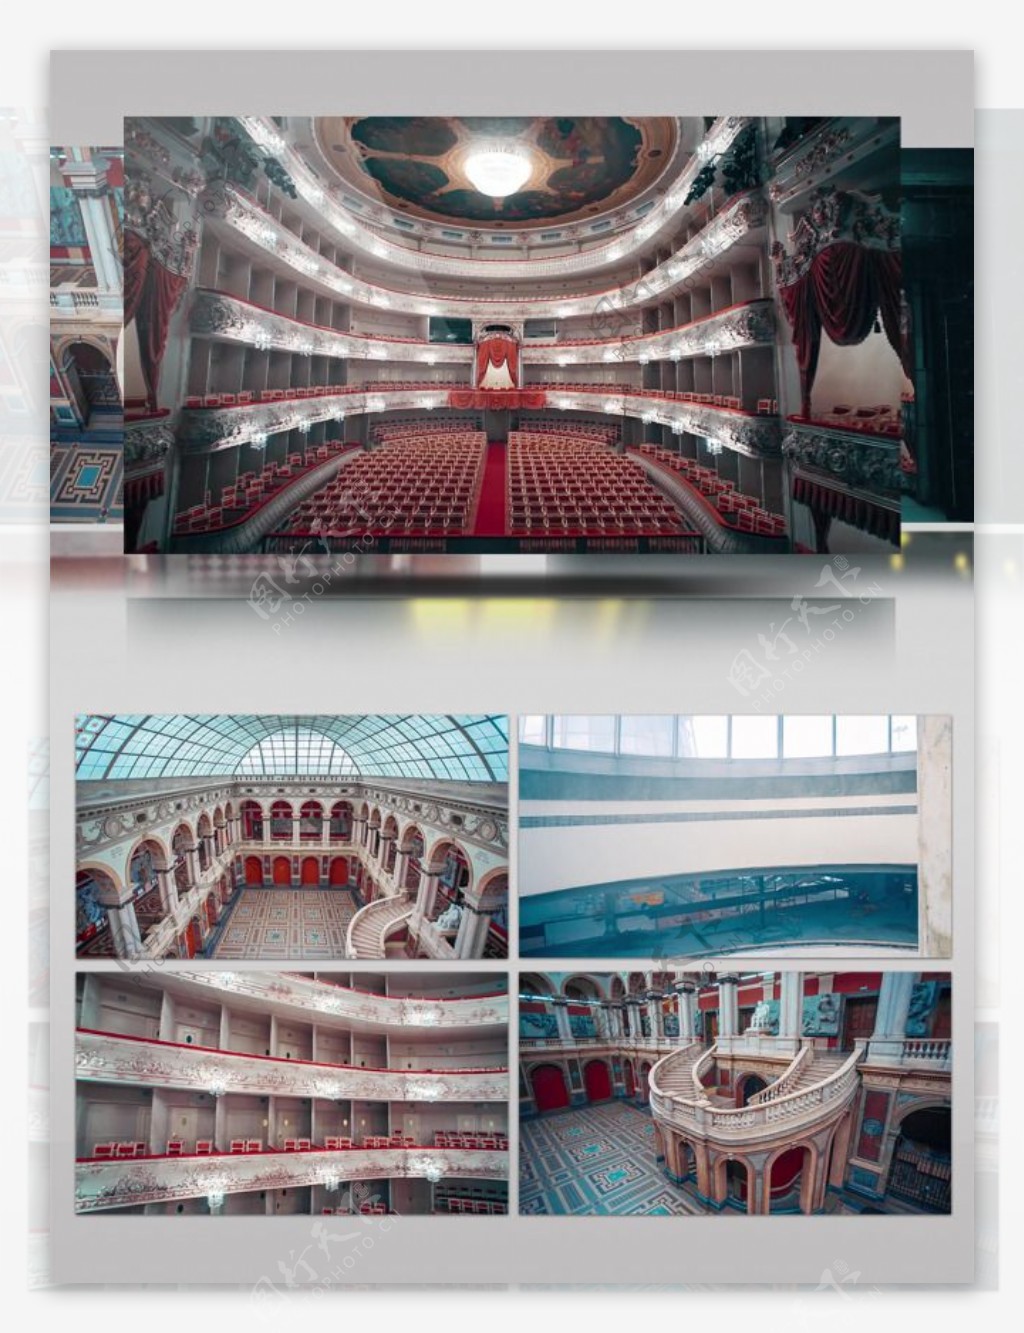 俄罗斯城市建筑歌剧院无人机拍摄内部空间